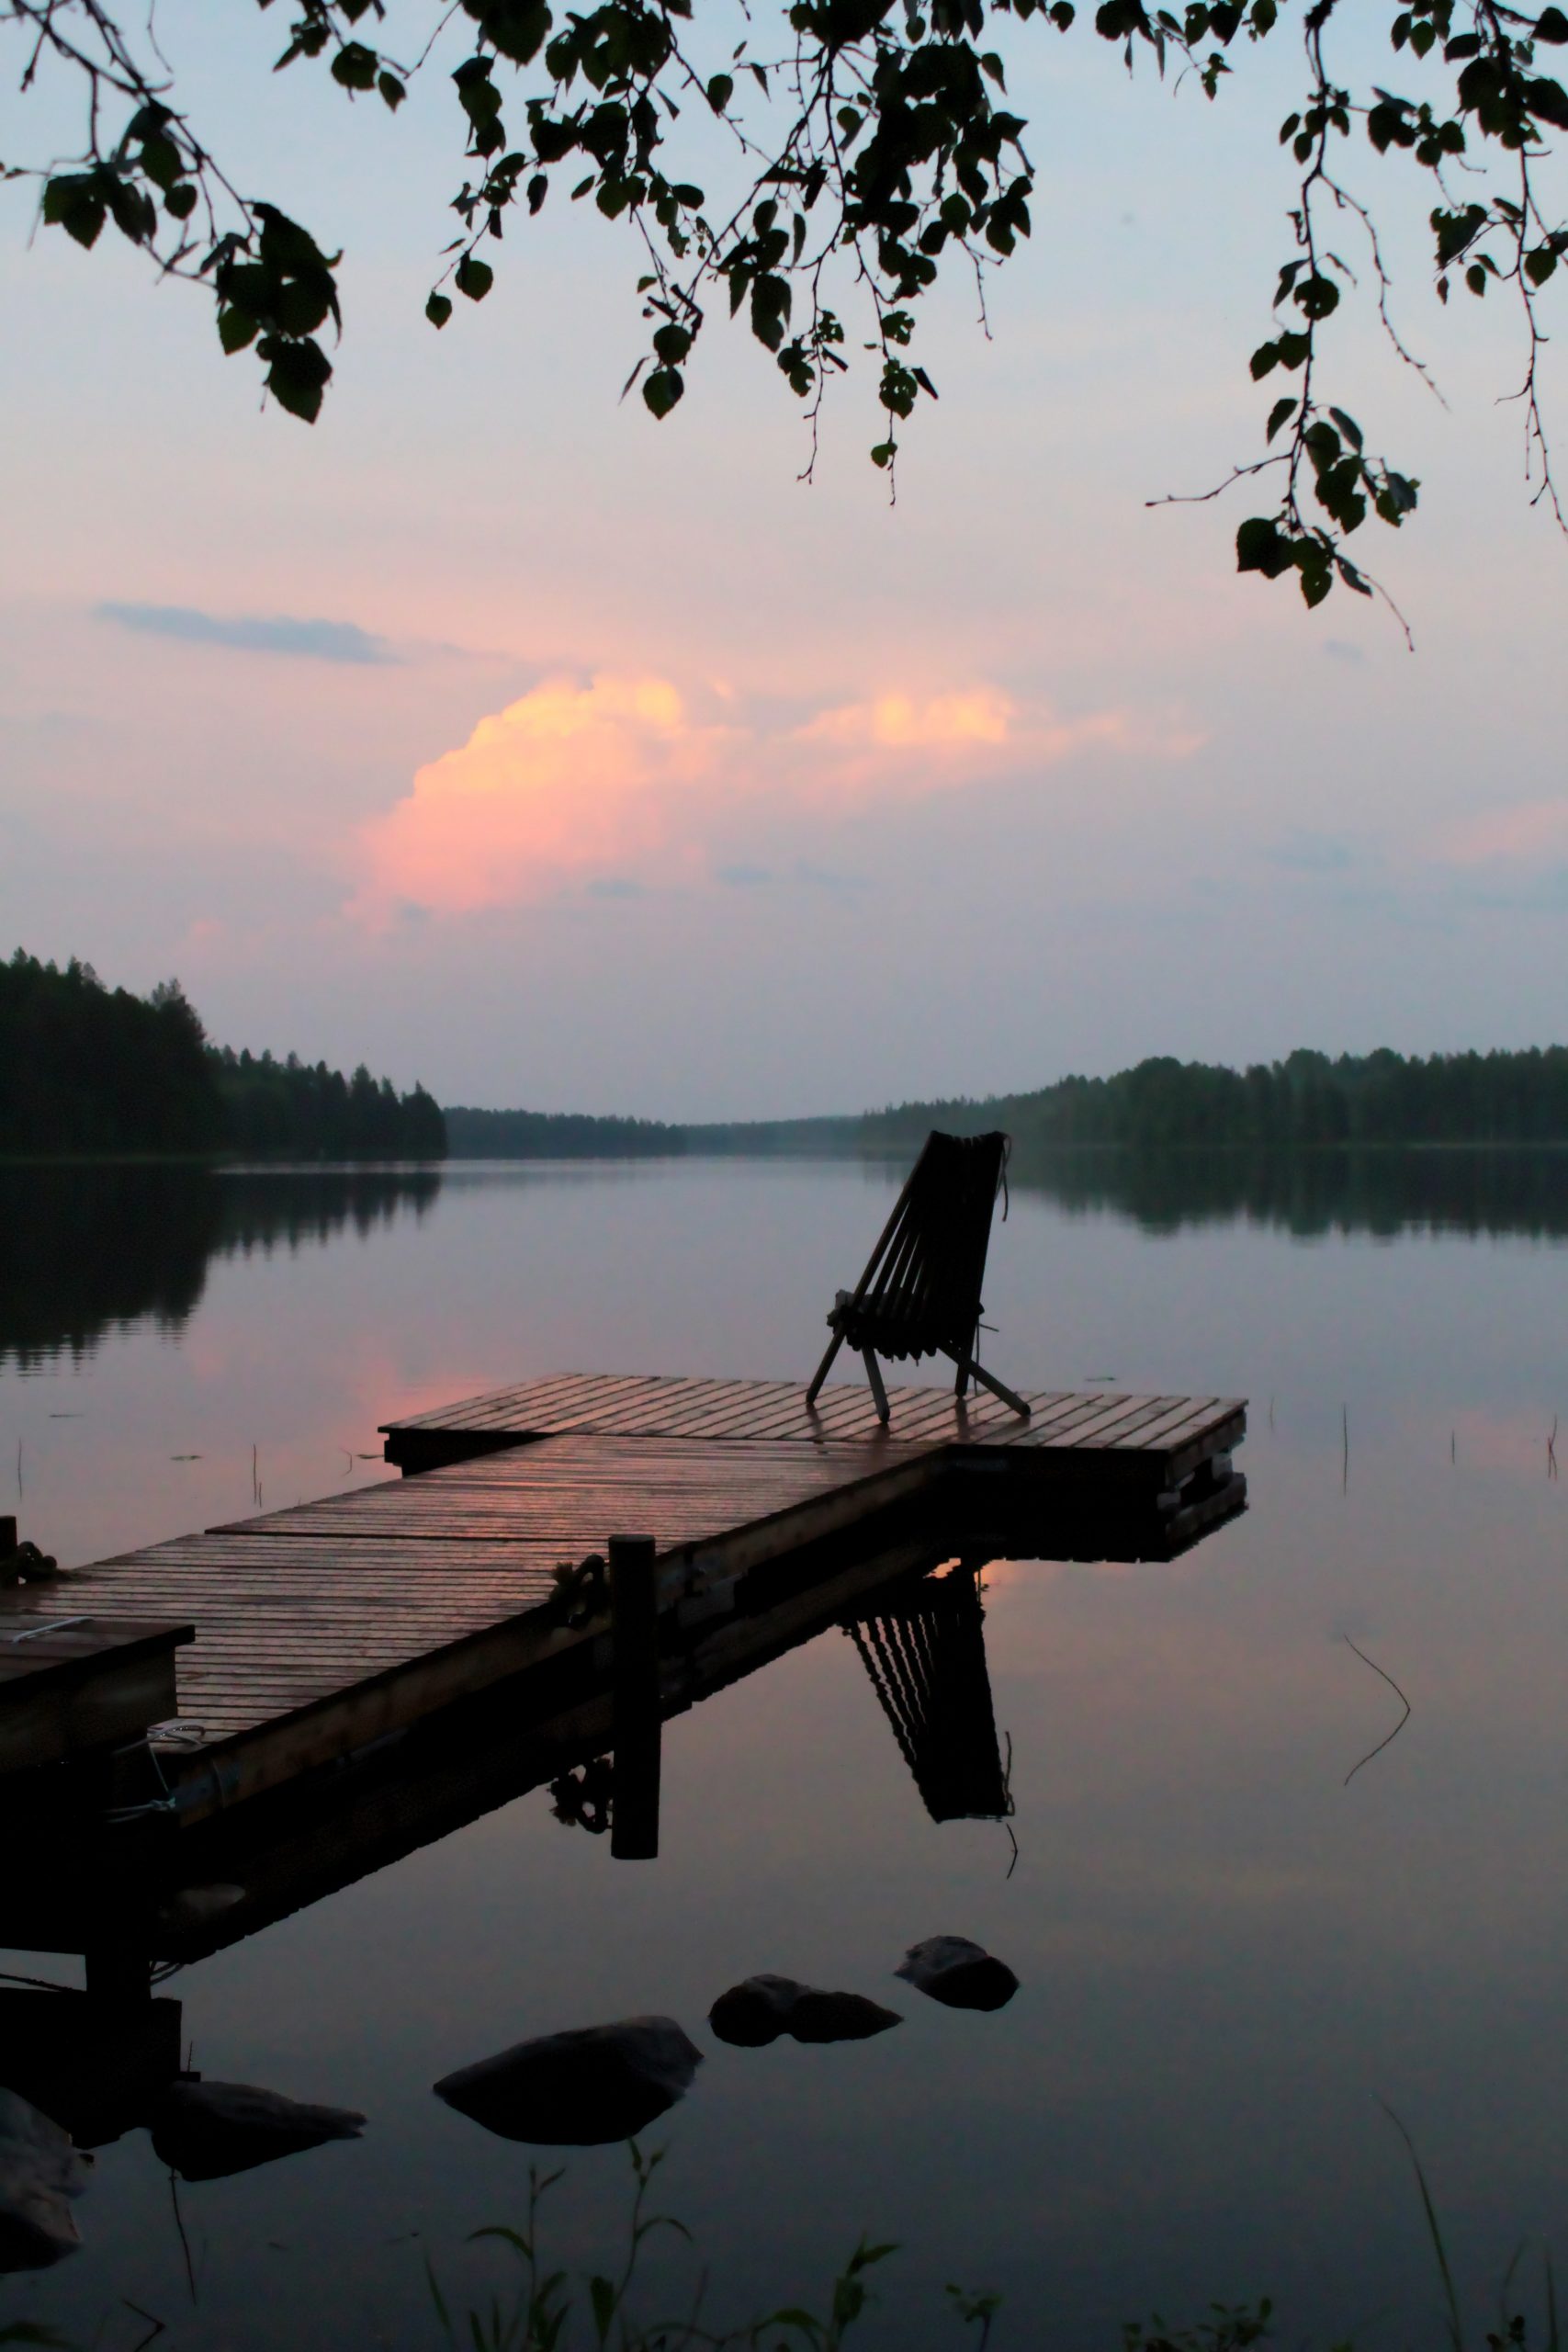 Un bonito atardecer de paz y tranquilidad a orillas de un lago. Simpplificar.